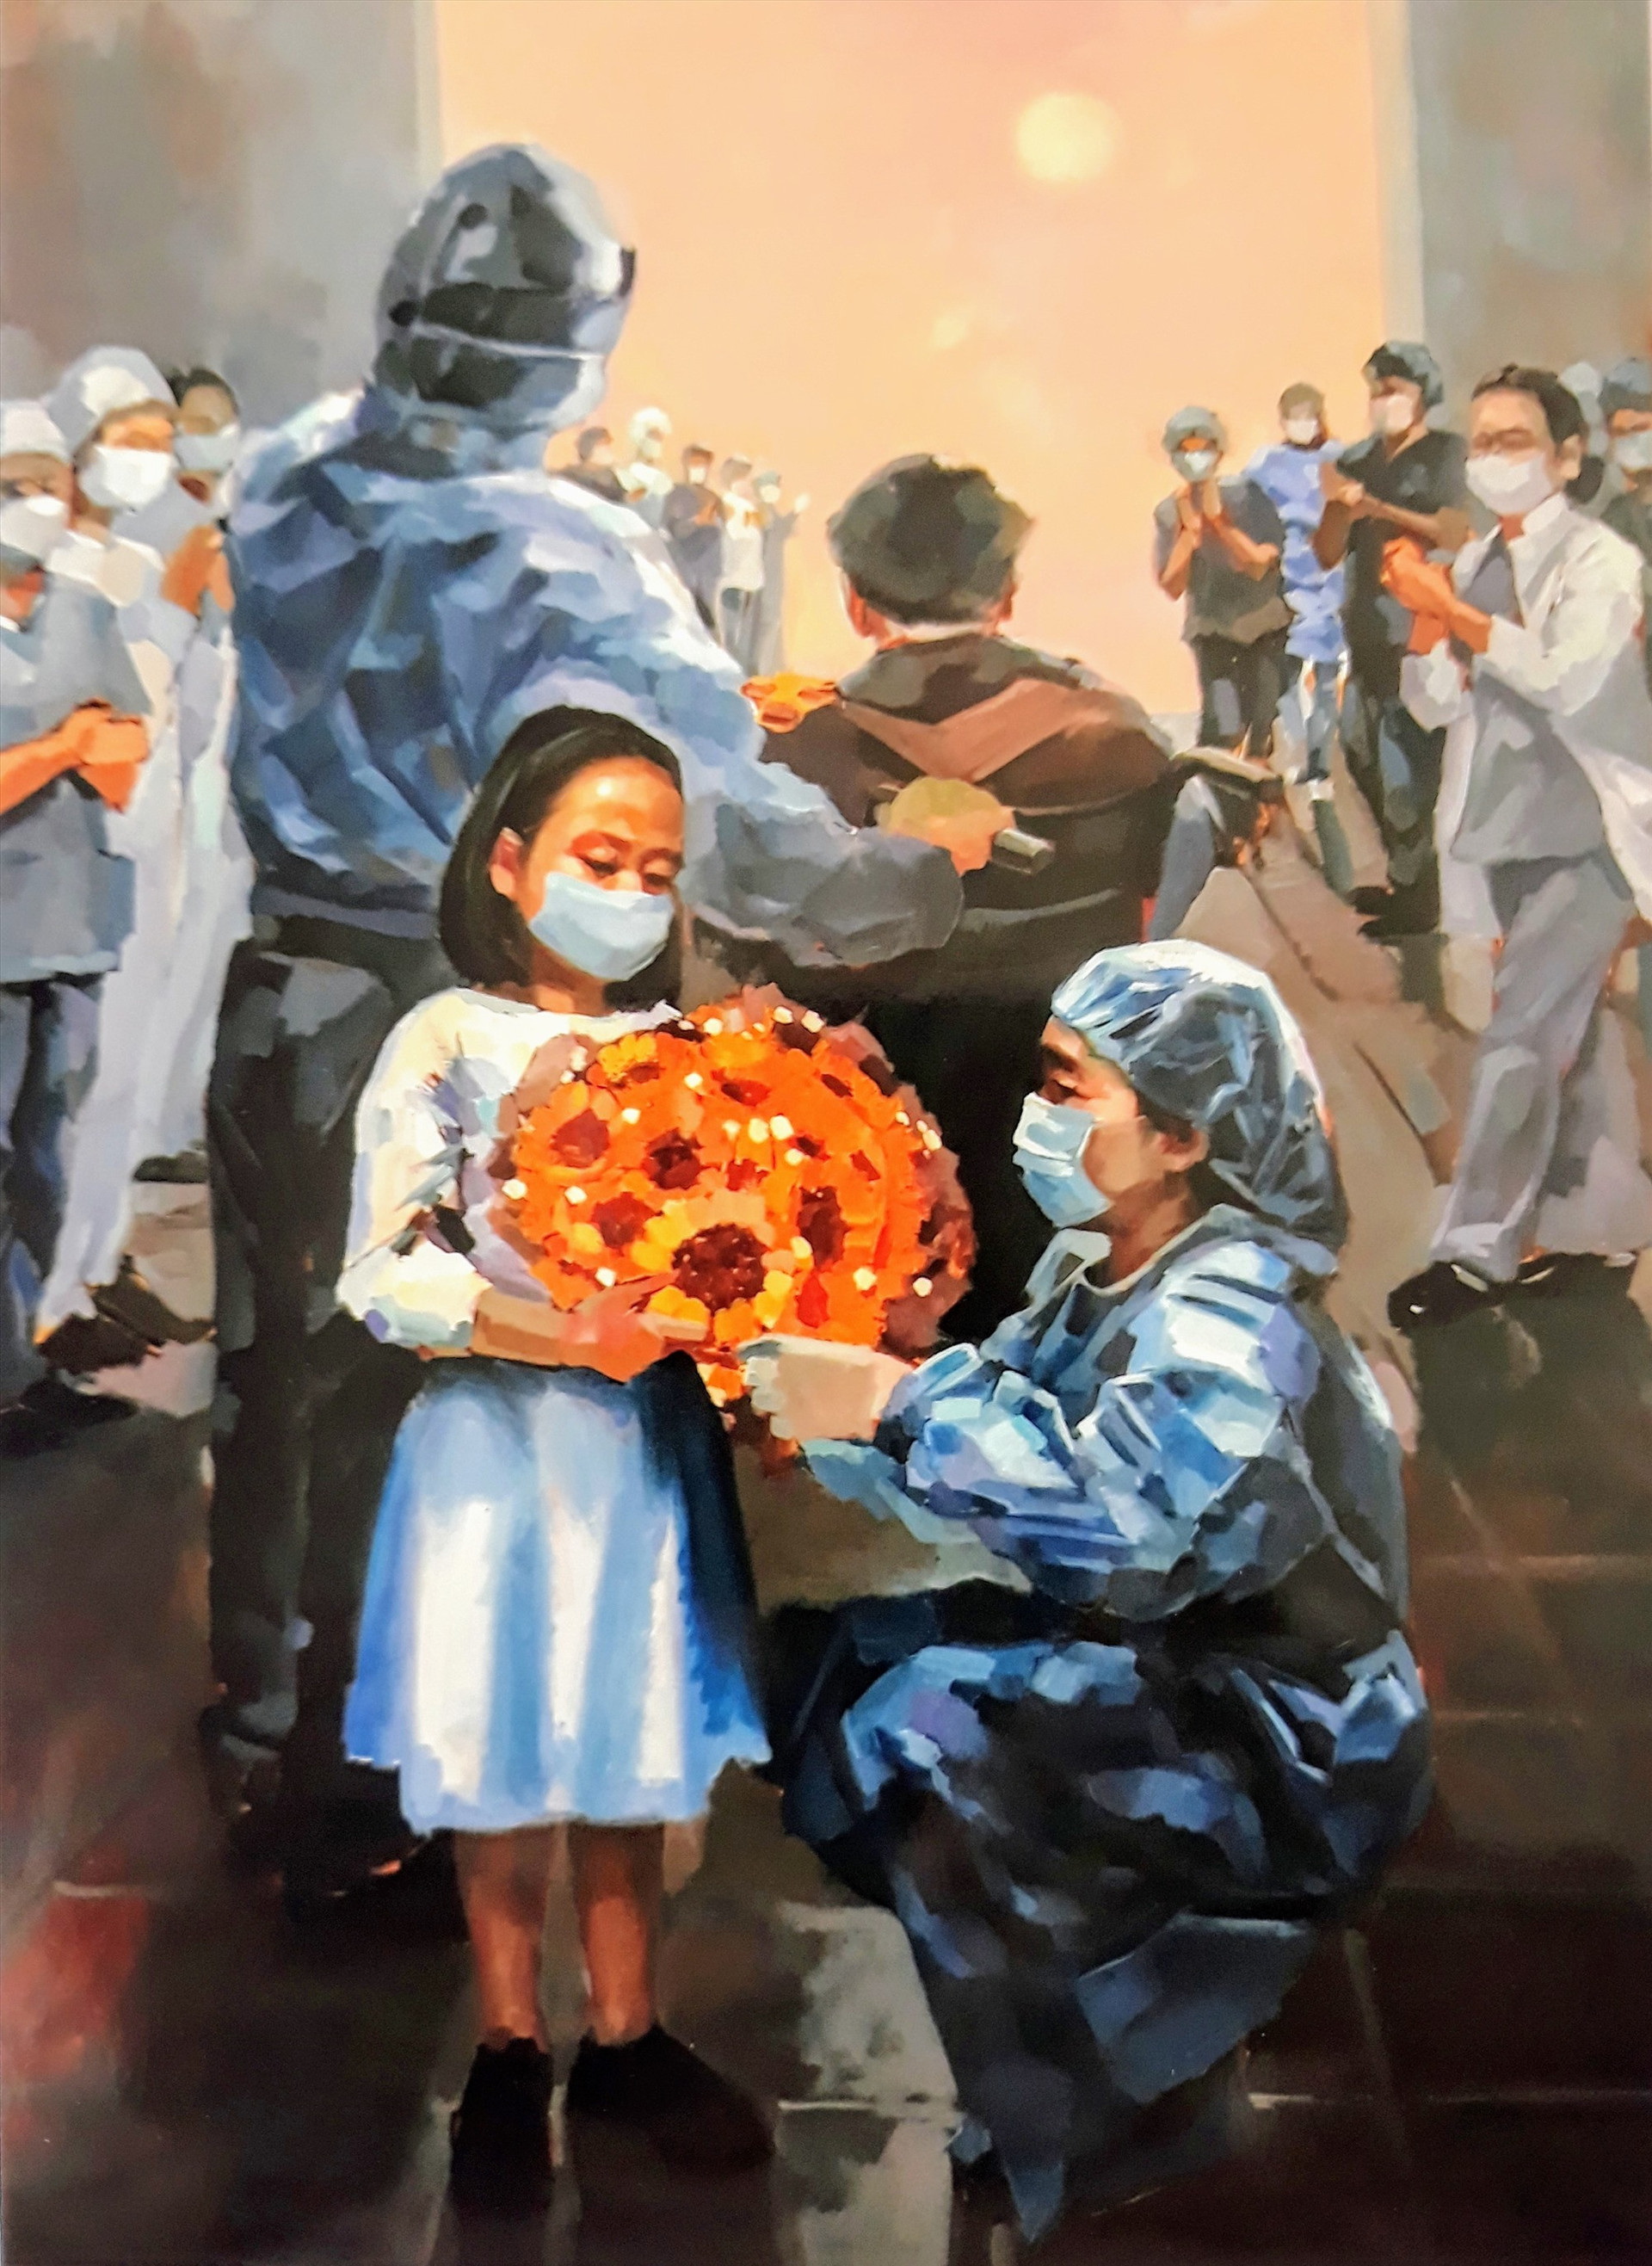 “Những đóa hướng dương”, tranh sơn dầu của Hà Châu, sáng tác trong đợt dịch Covid-19 hồi đầu năm, được chọn trưng bày tại Triển lãm Mỹ thuật Nam miền Trung-Tây Nguyên 2020. Ảnh: T.G